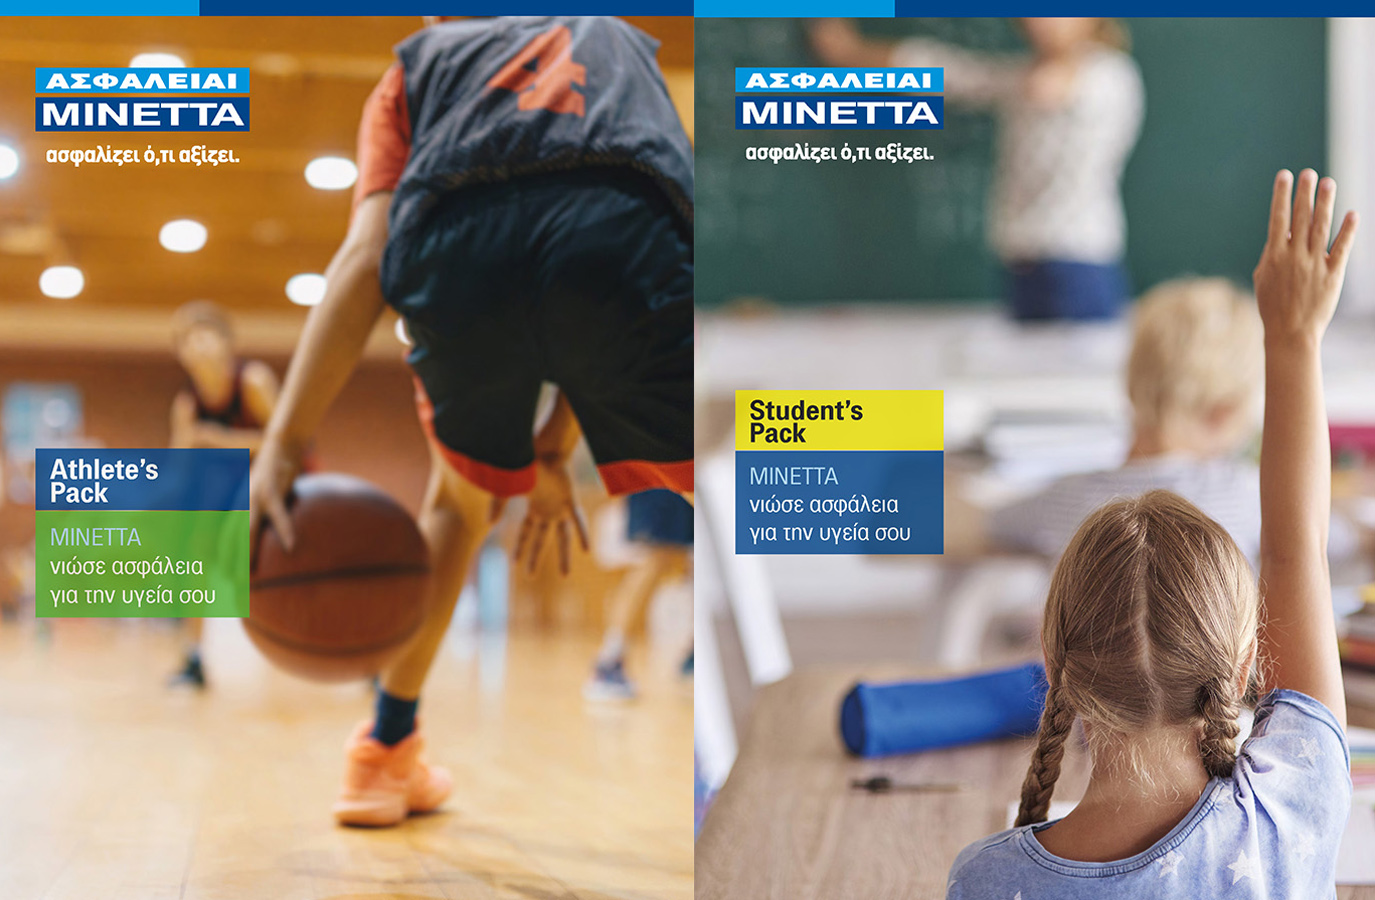 Μινέττα Ασφαλιστική: Νέα προγράμματα για την ομαδική ασφάλιση αθλητών και μαθητών